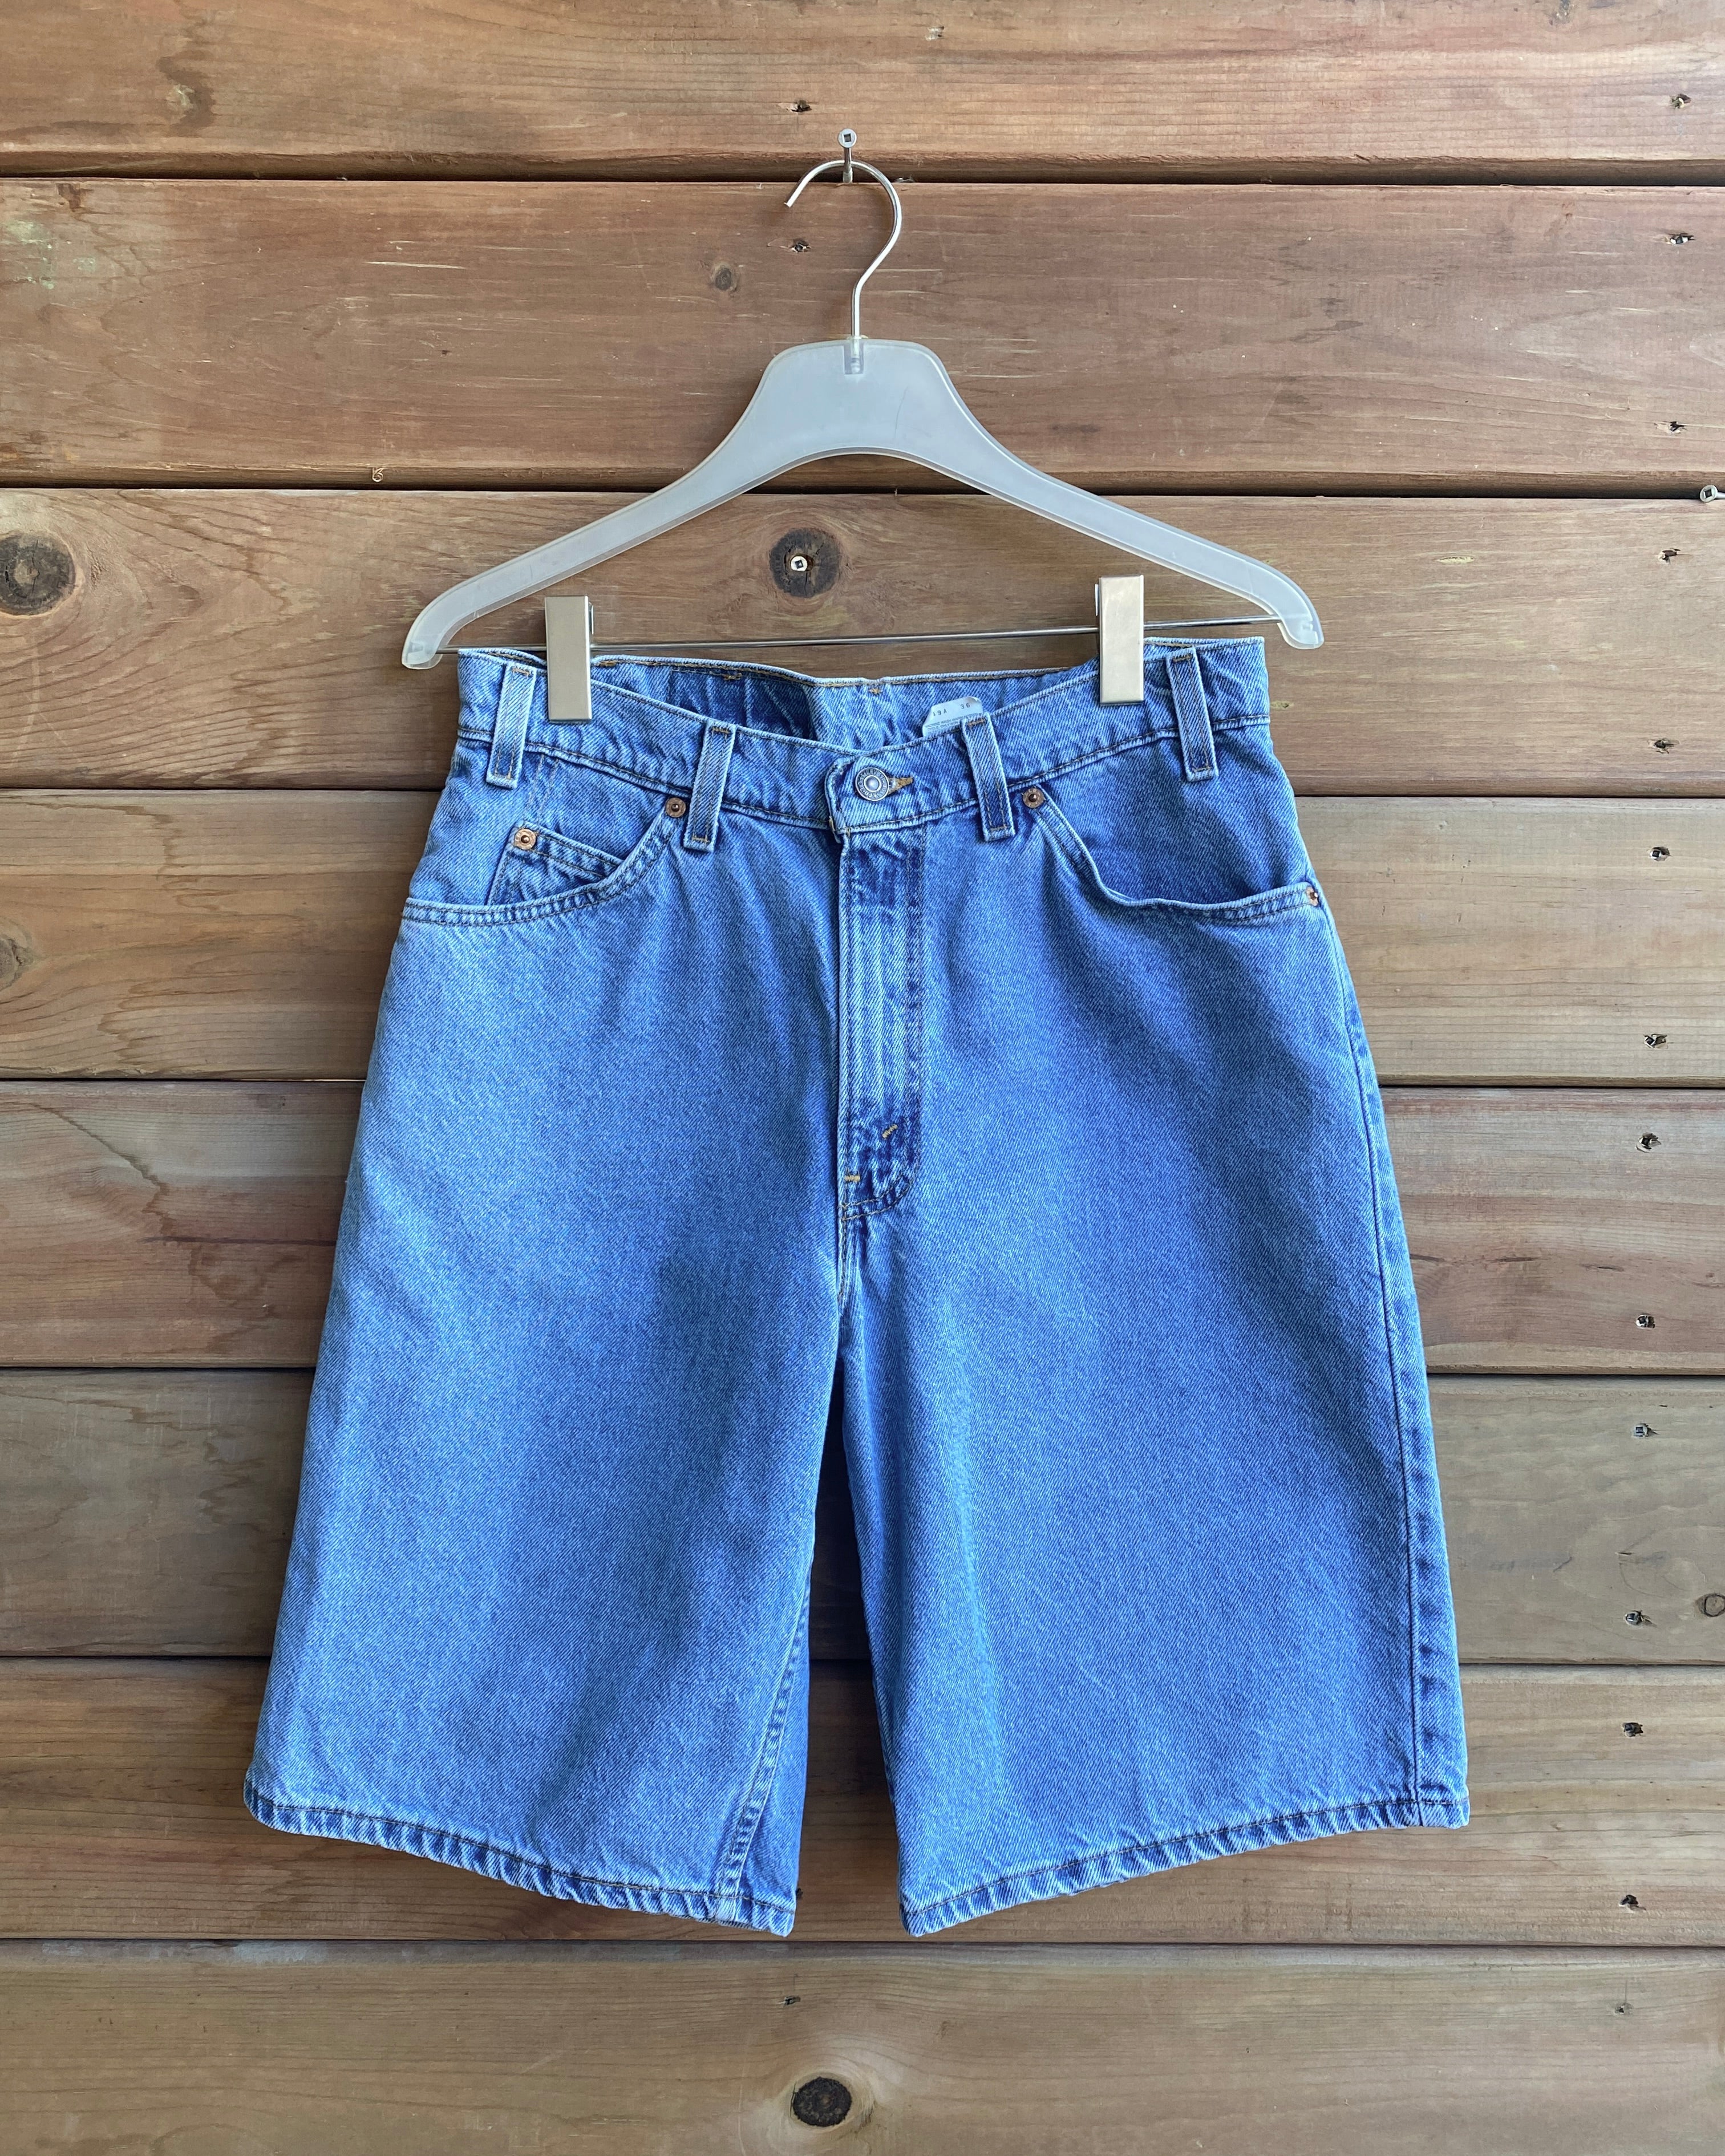 Vintage 1990s Orange Tab Levis 560 Medium Wash Bermuda Cutoffs Denim Jean Shorts 30 Made in USA